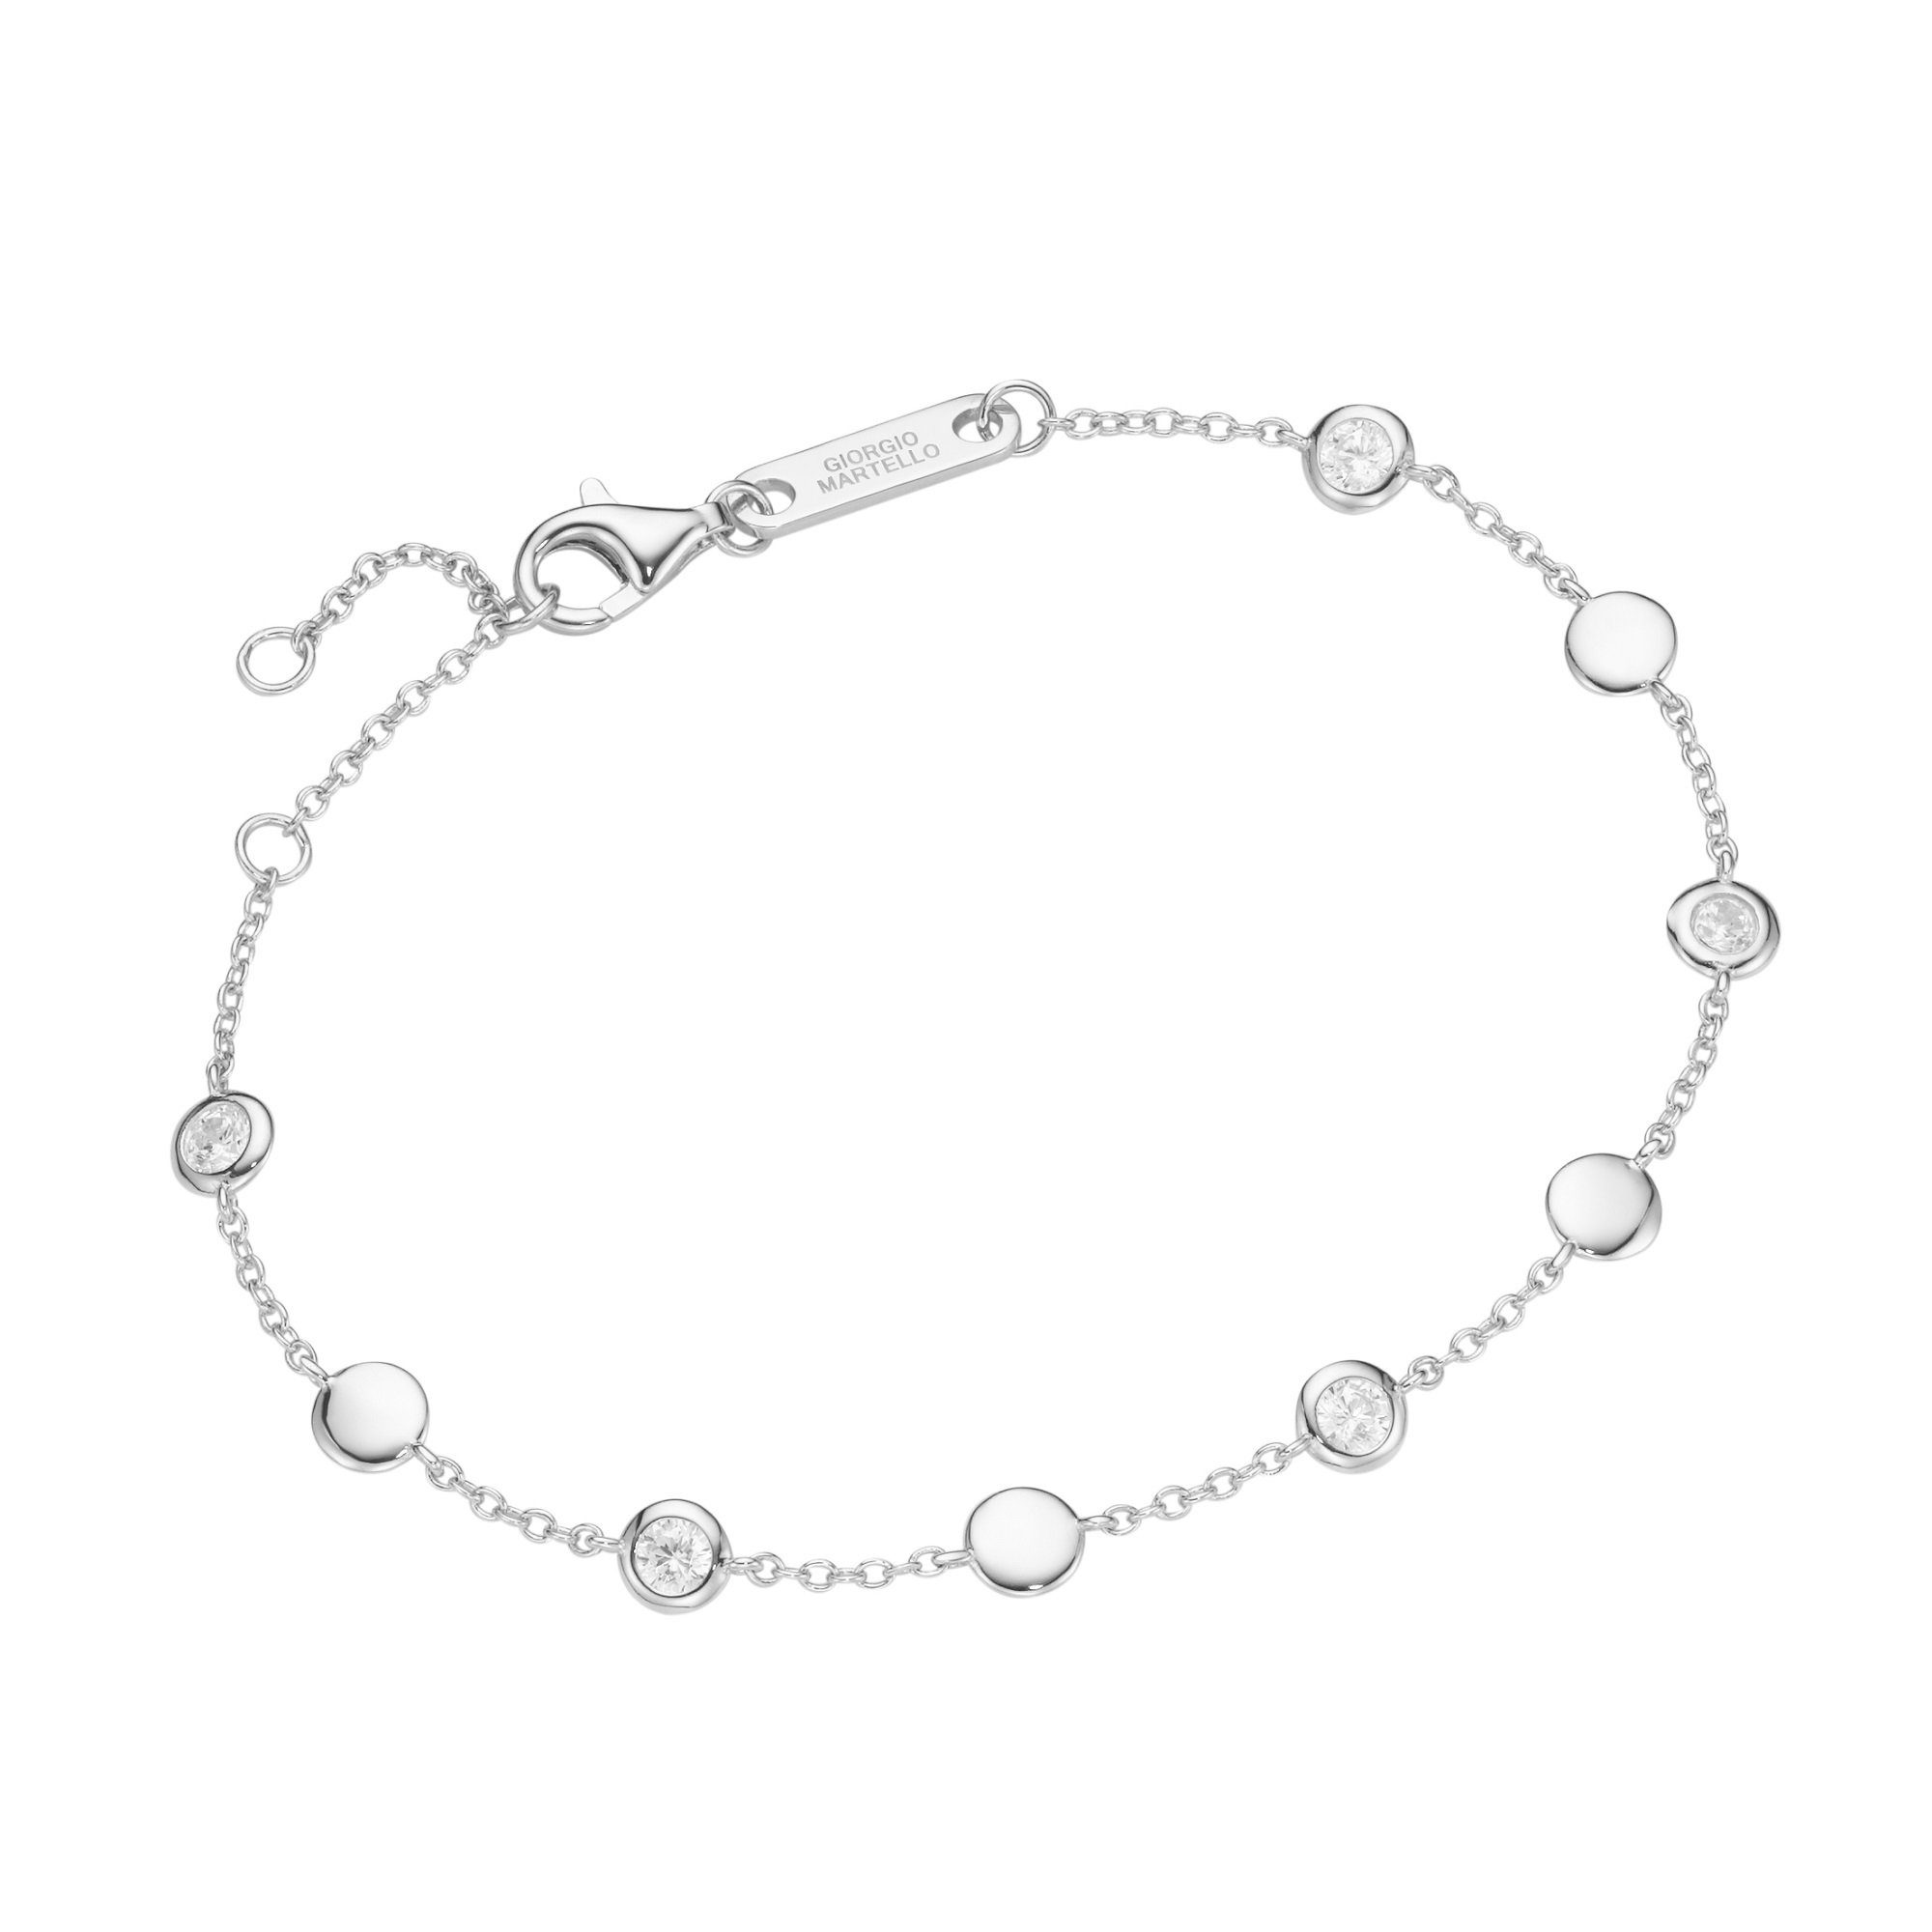 GIORGIO MARTELLO MILANO Armband mit Zwischenteilen, weiße Zirkonia, Silber 925 | Silberarmbänder